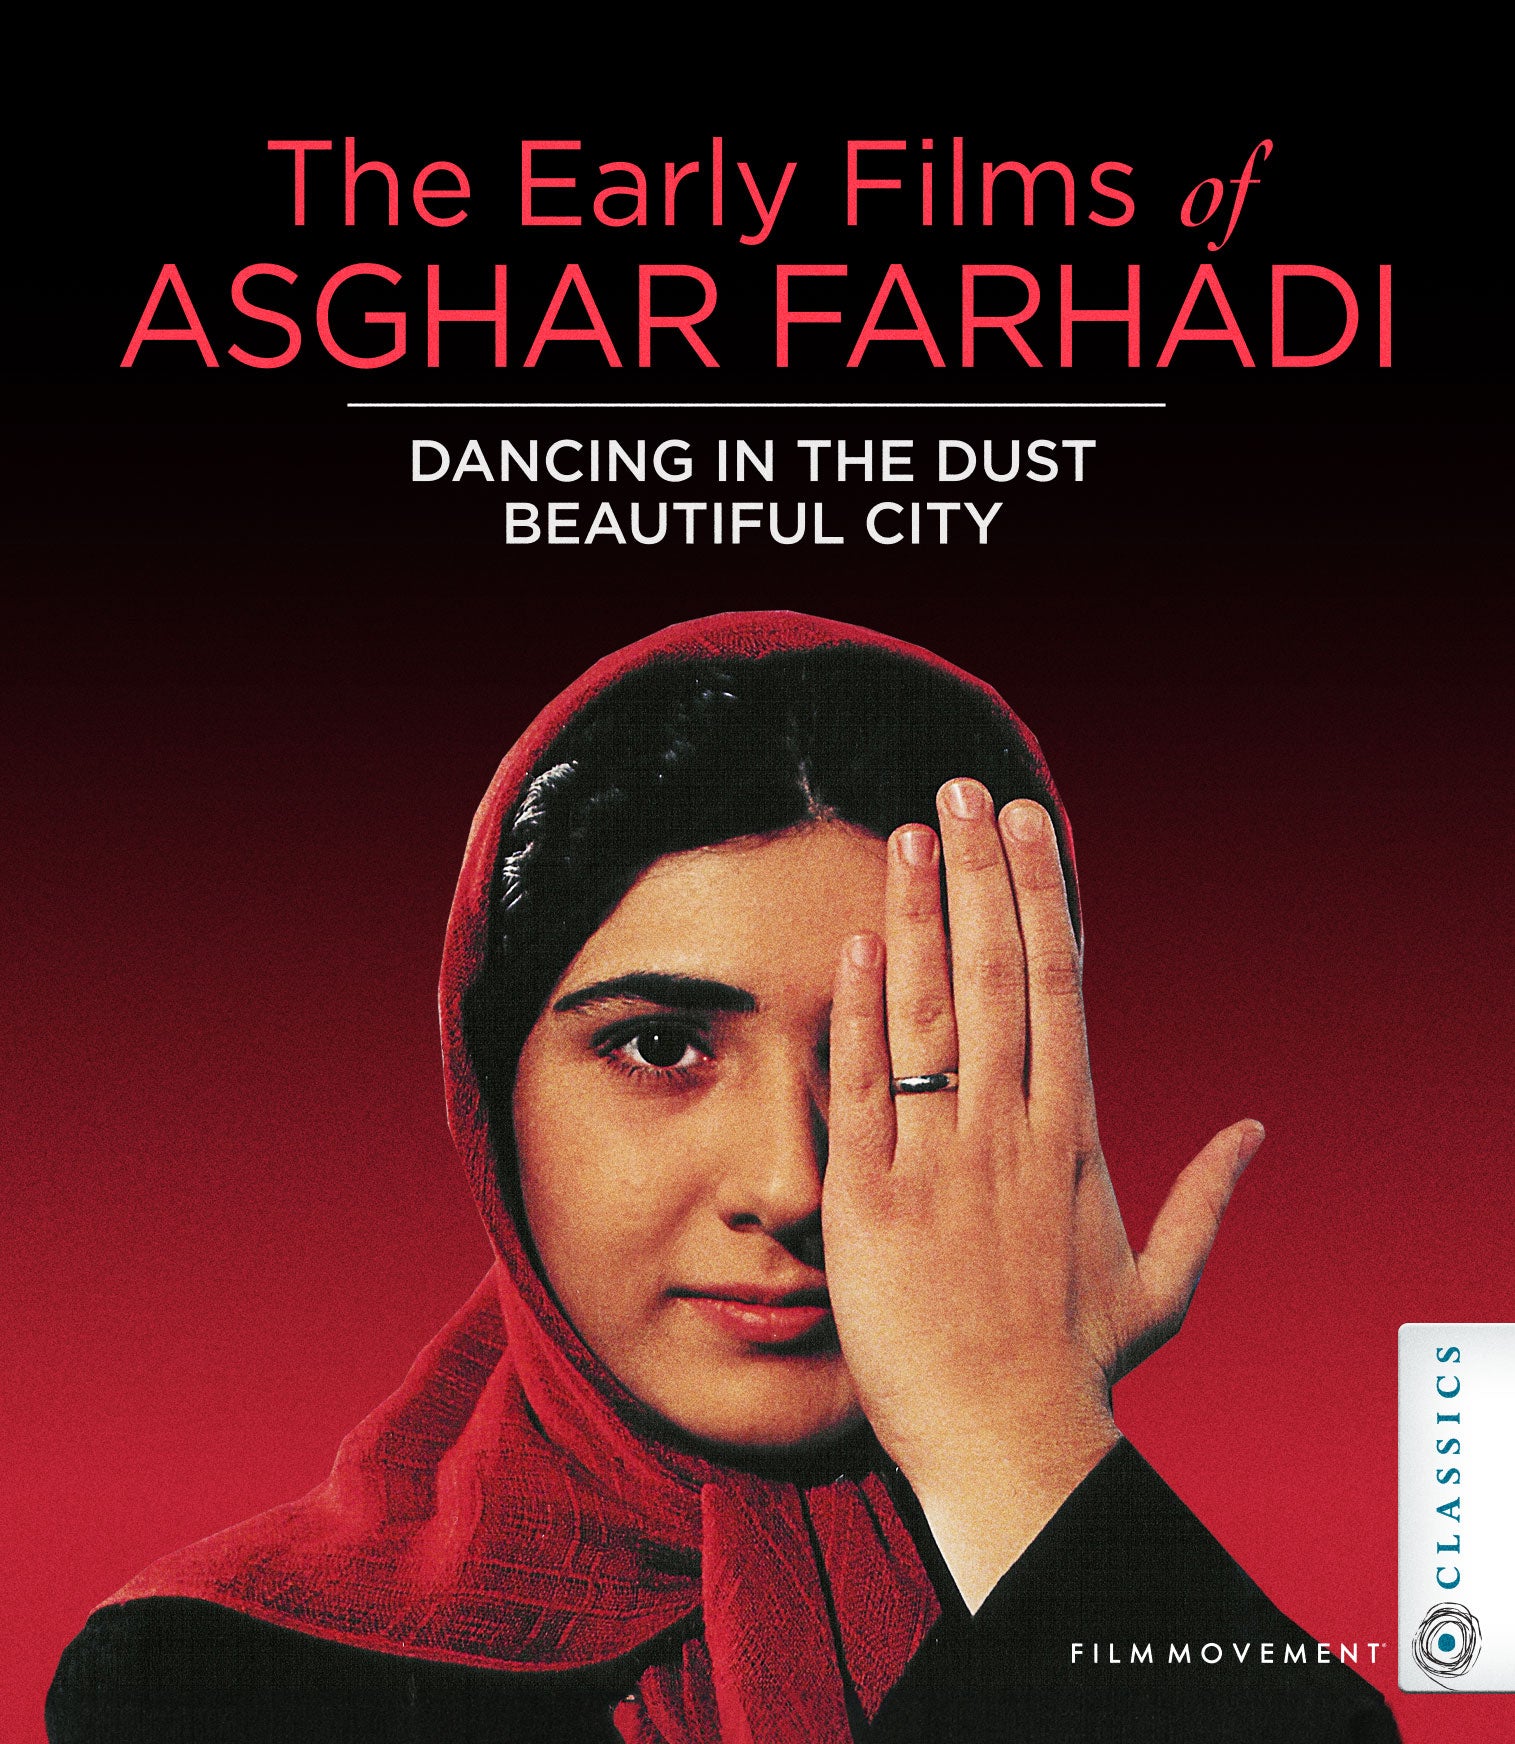 THE EARLY FILMS OF ASGHAR FARHADI BLU-RAY